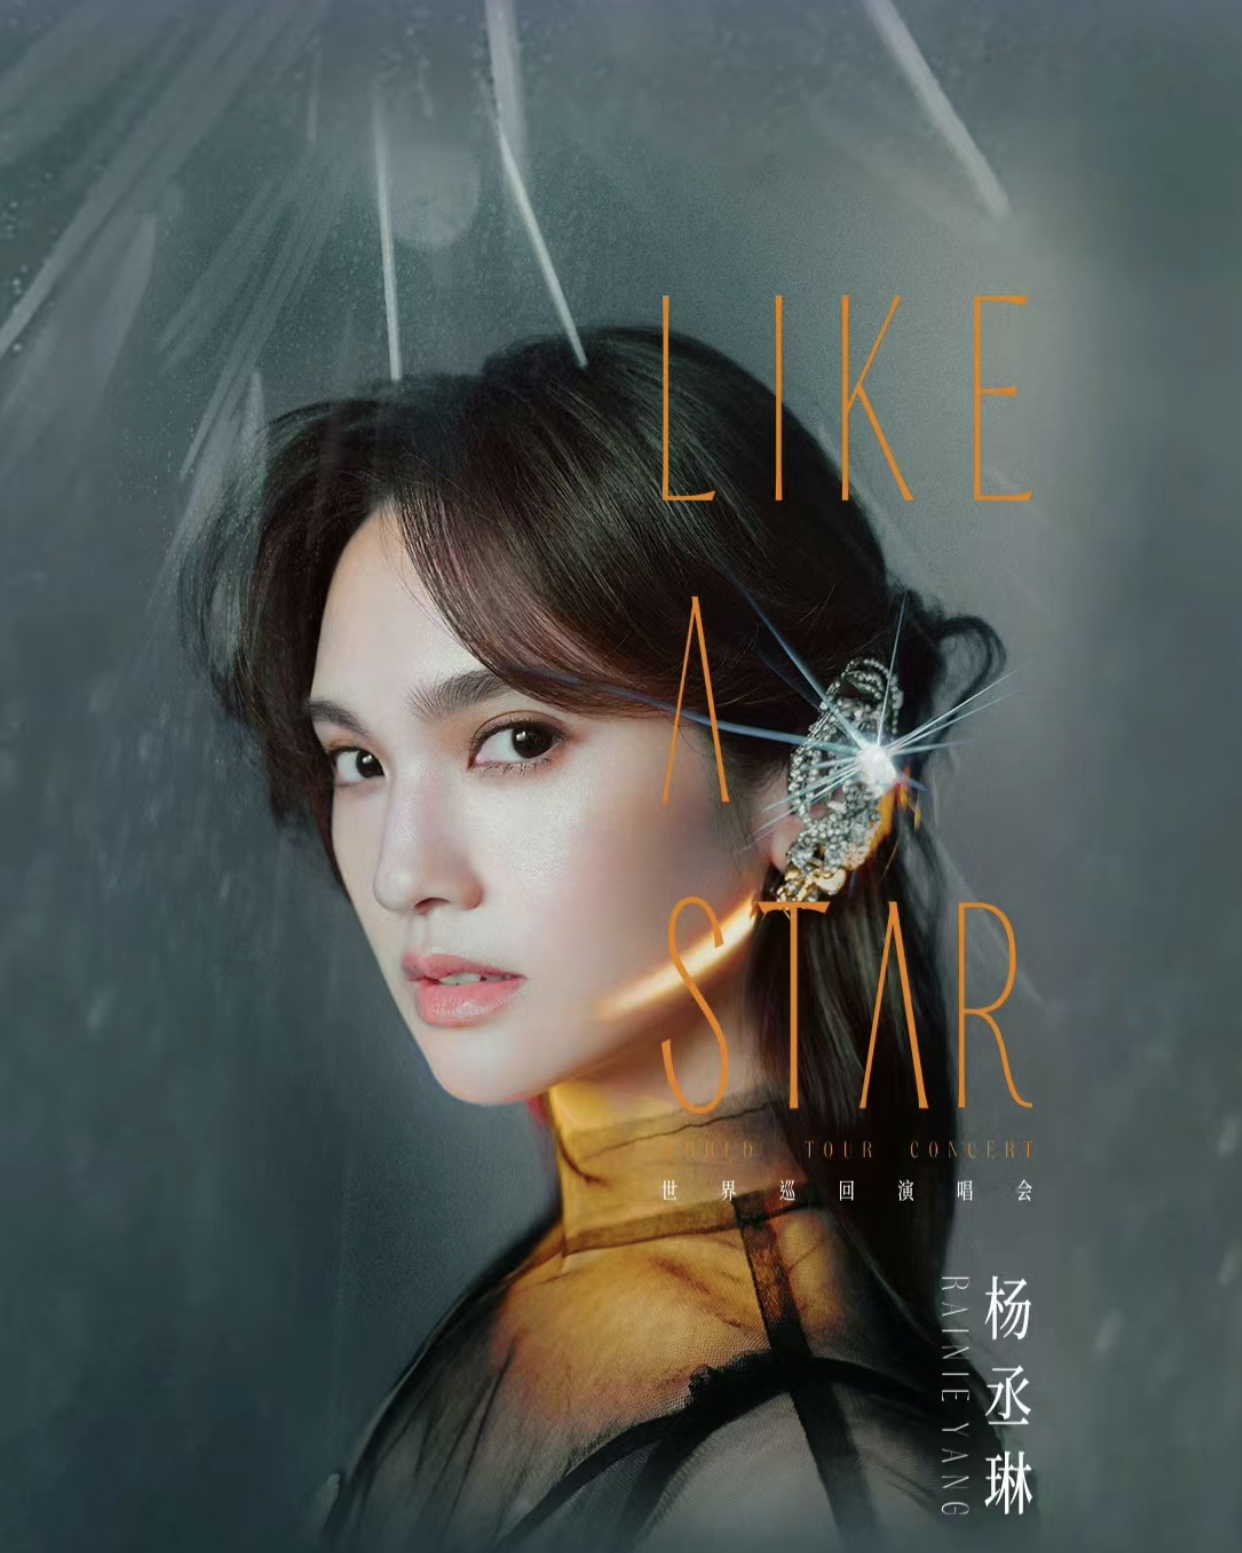 [福州]杨丞琳“LIKE A STAR”巡回演唱会-福州站